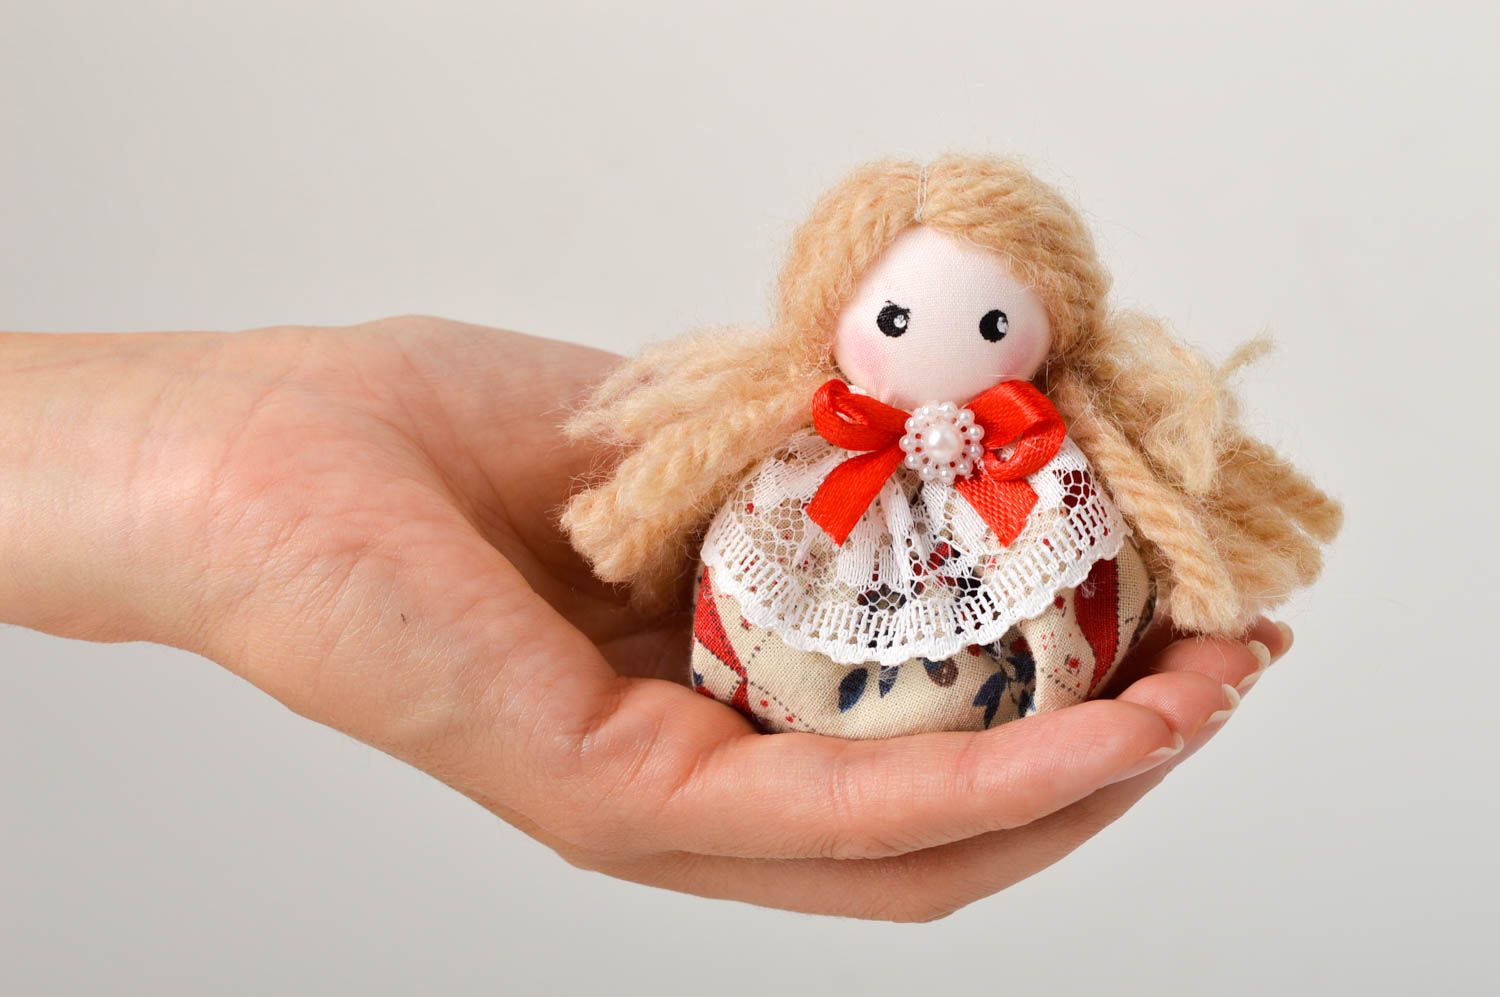 Кукла ручной работы кукла из ткани маленькая авторская кукла с запахом лаванды фото 2